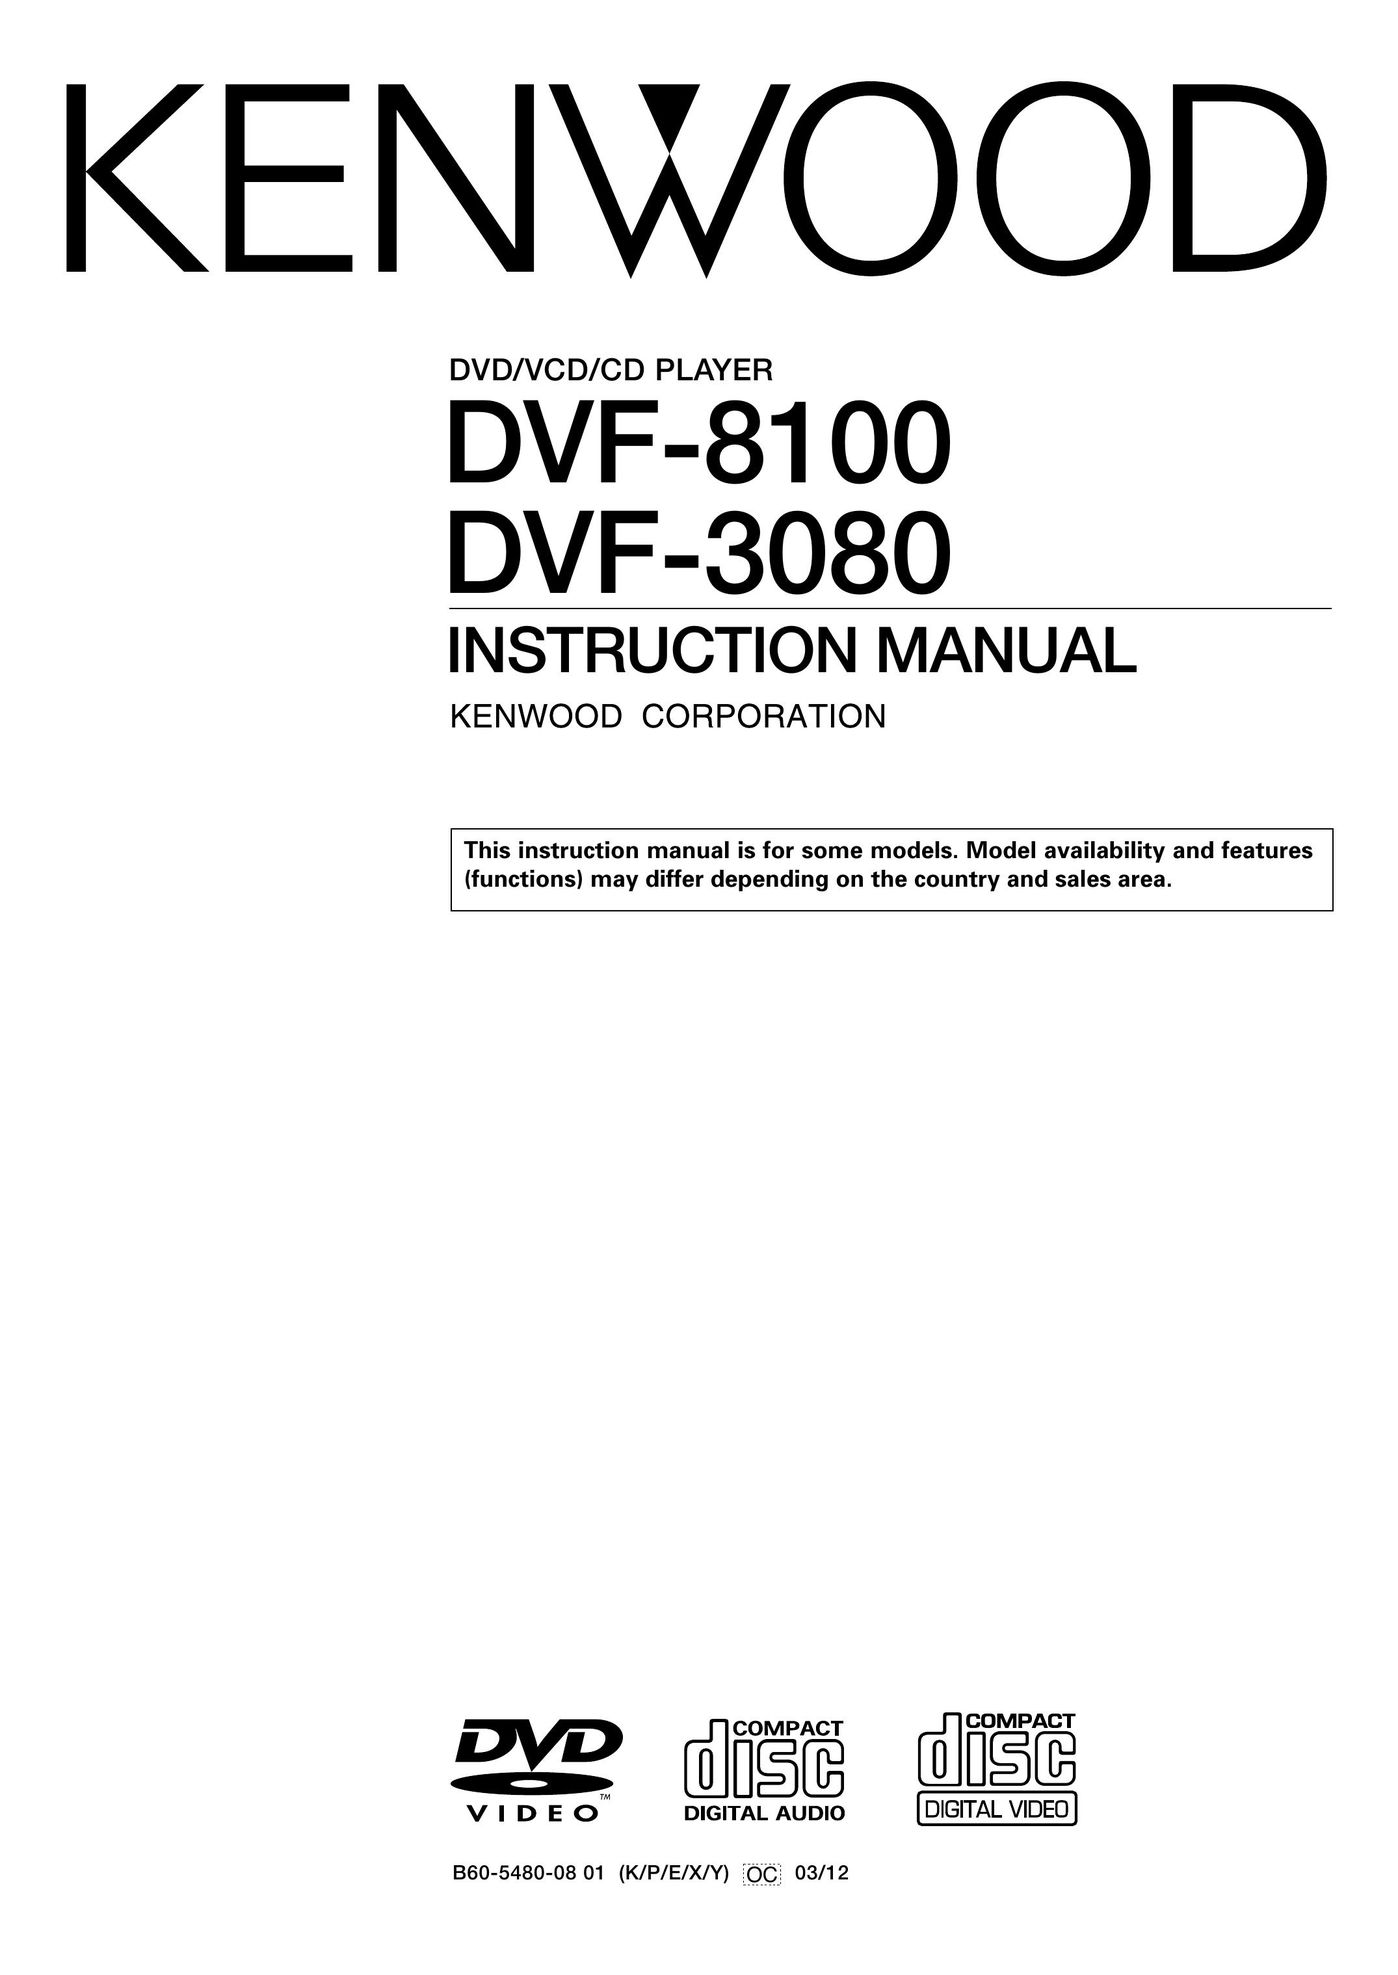 Kenwood DVF-3080 DVD Player User Manual